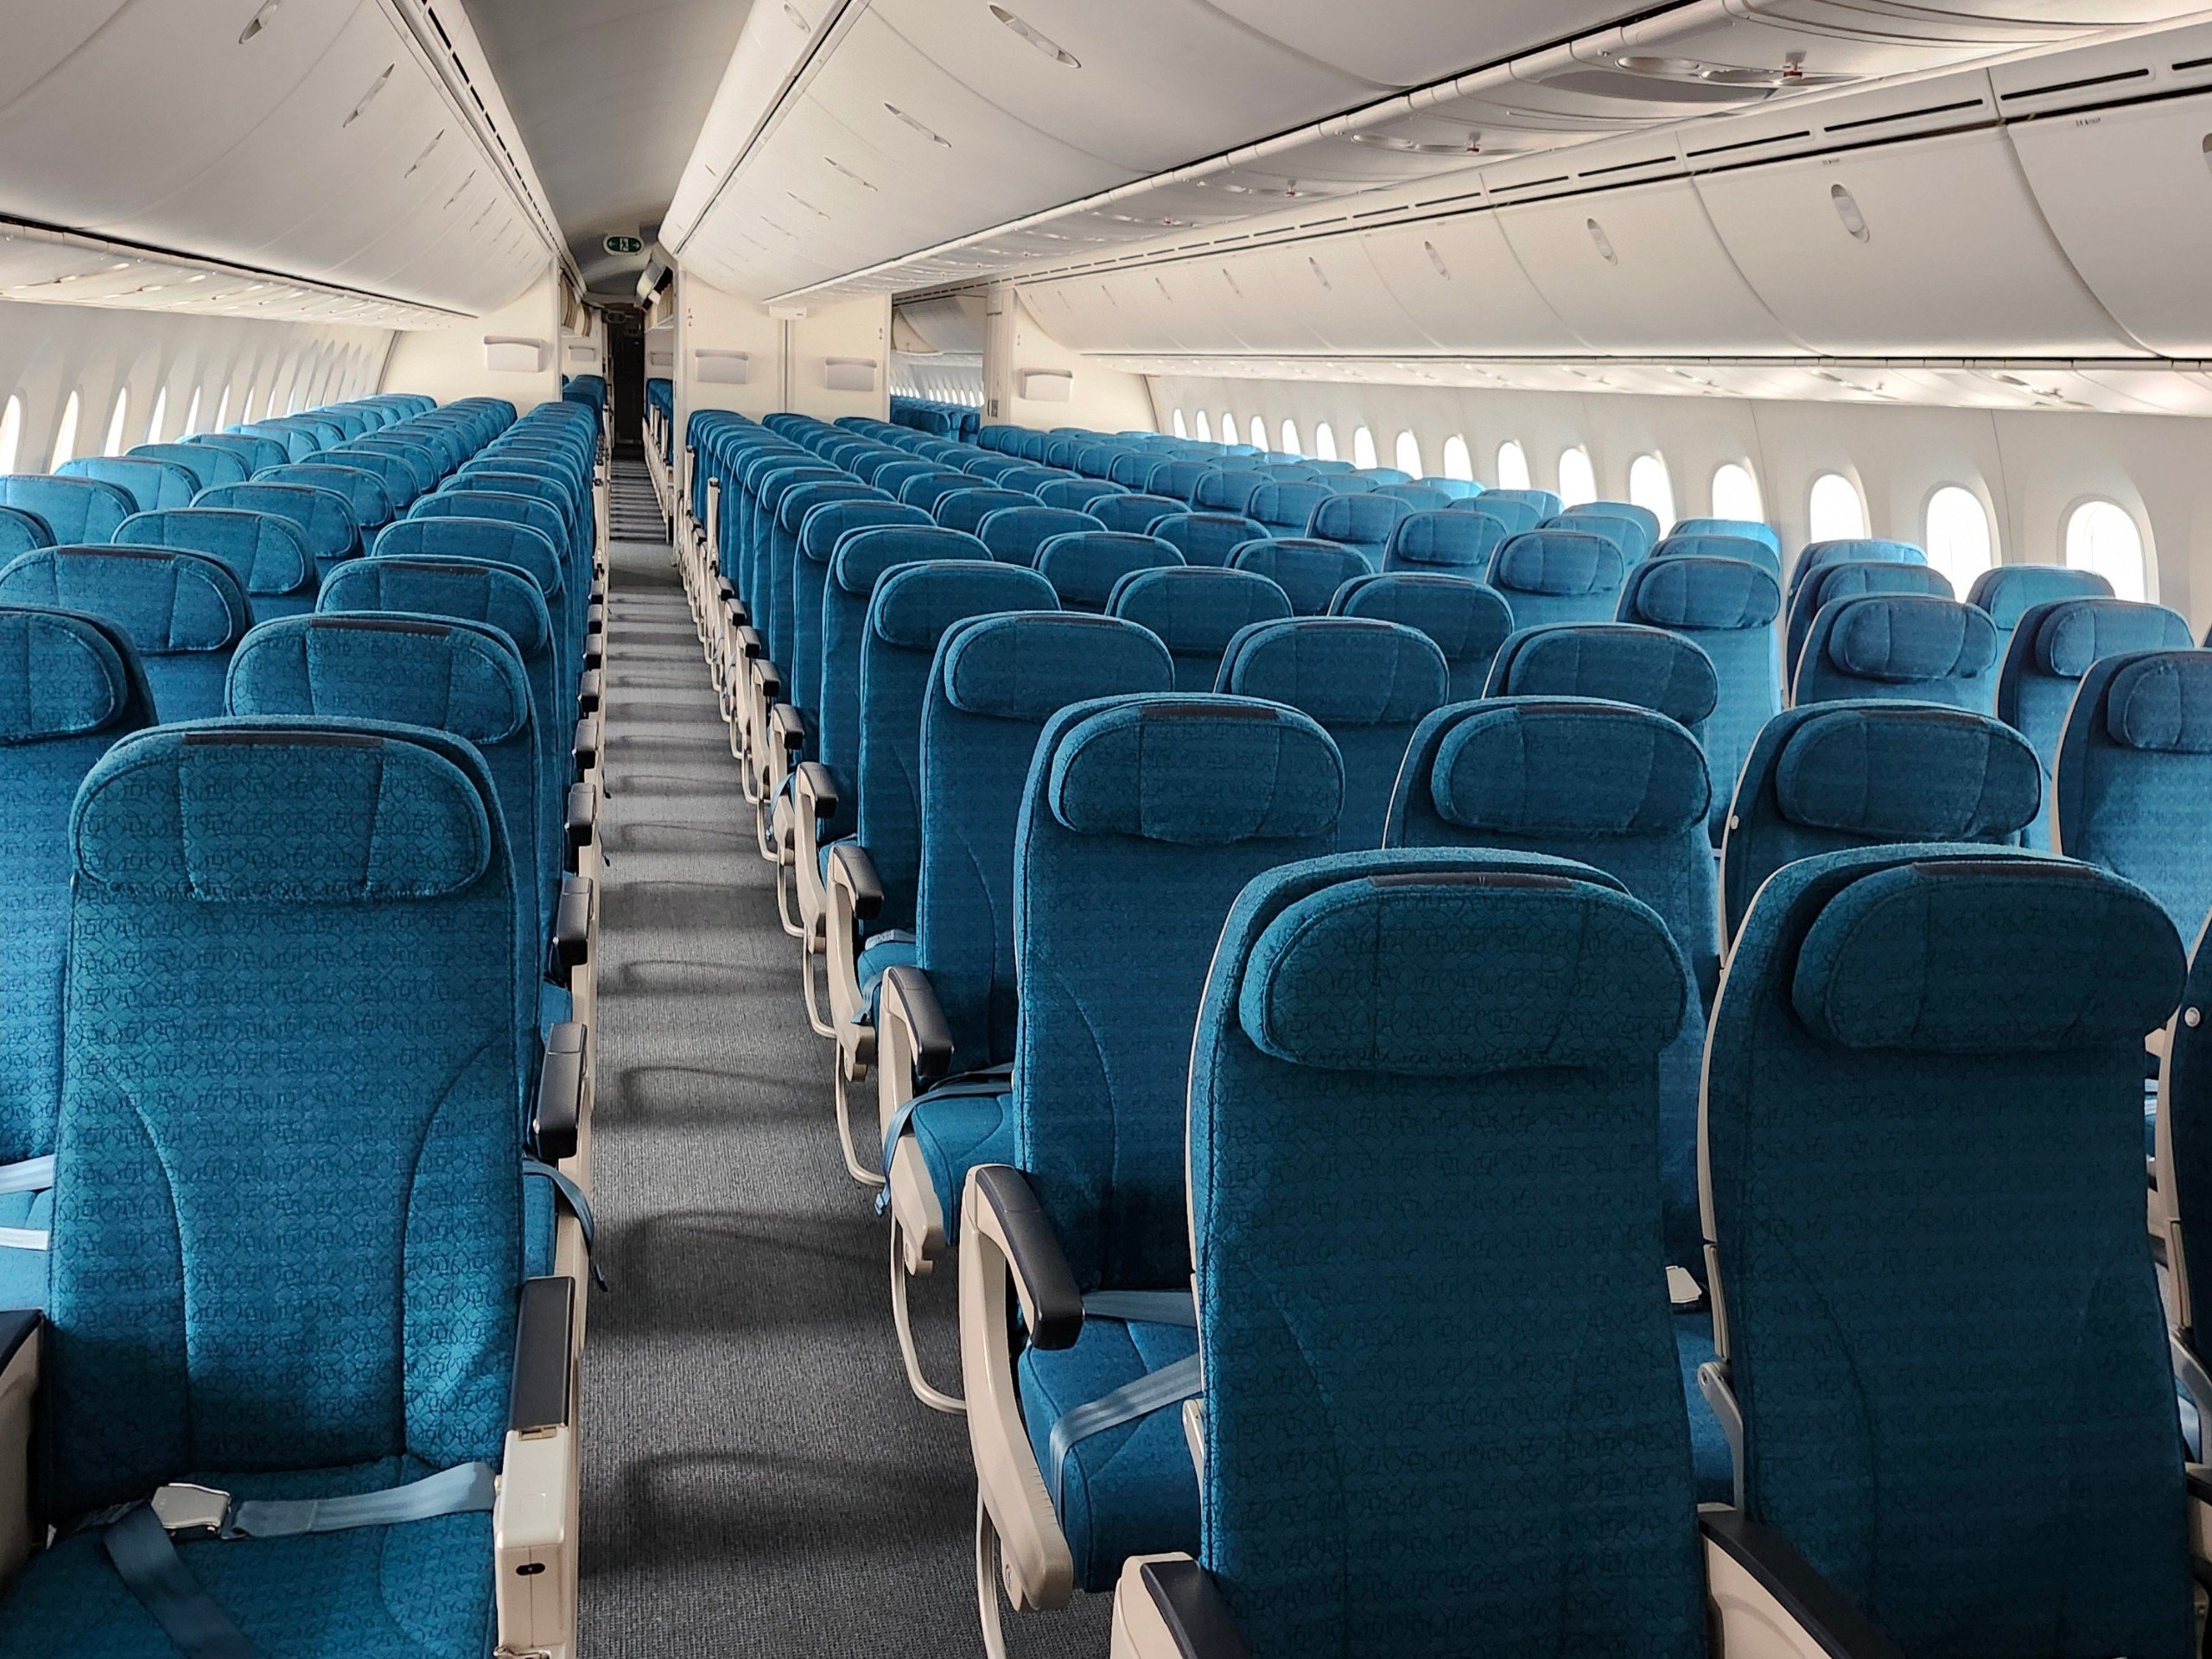 Bên cạnh khả năng chuyên chở lên tới 400 hành khách mỗi chuyến, Boeing 787-10 kế thừa nhiều ưu điểm vượt trội của Boeing 787-9 như không gian rộng rãi, ghế ngồi thoải mái, hệ thống giải trí hiện đại, ánh sáng đèn LED, độ ẩm không khí và áp suất đem lại cảm giác dễ chịu cho hành khách. Cửa sổ được thiết kế rộng hơn và ánh sáng được điều khiển theo 5 chế độ bằng điện thay cho các tấm che cửa sổ truyền thống